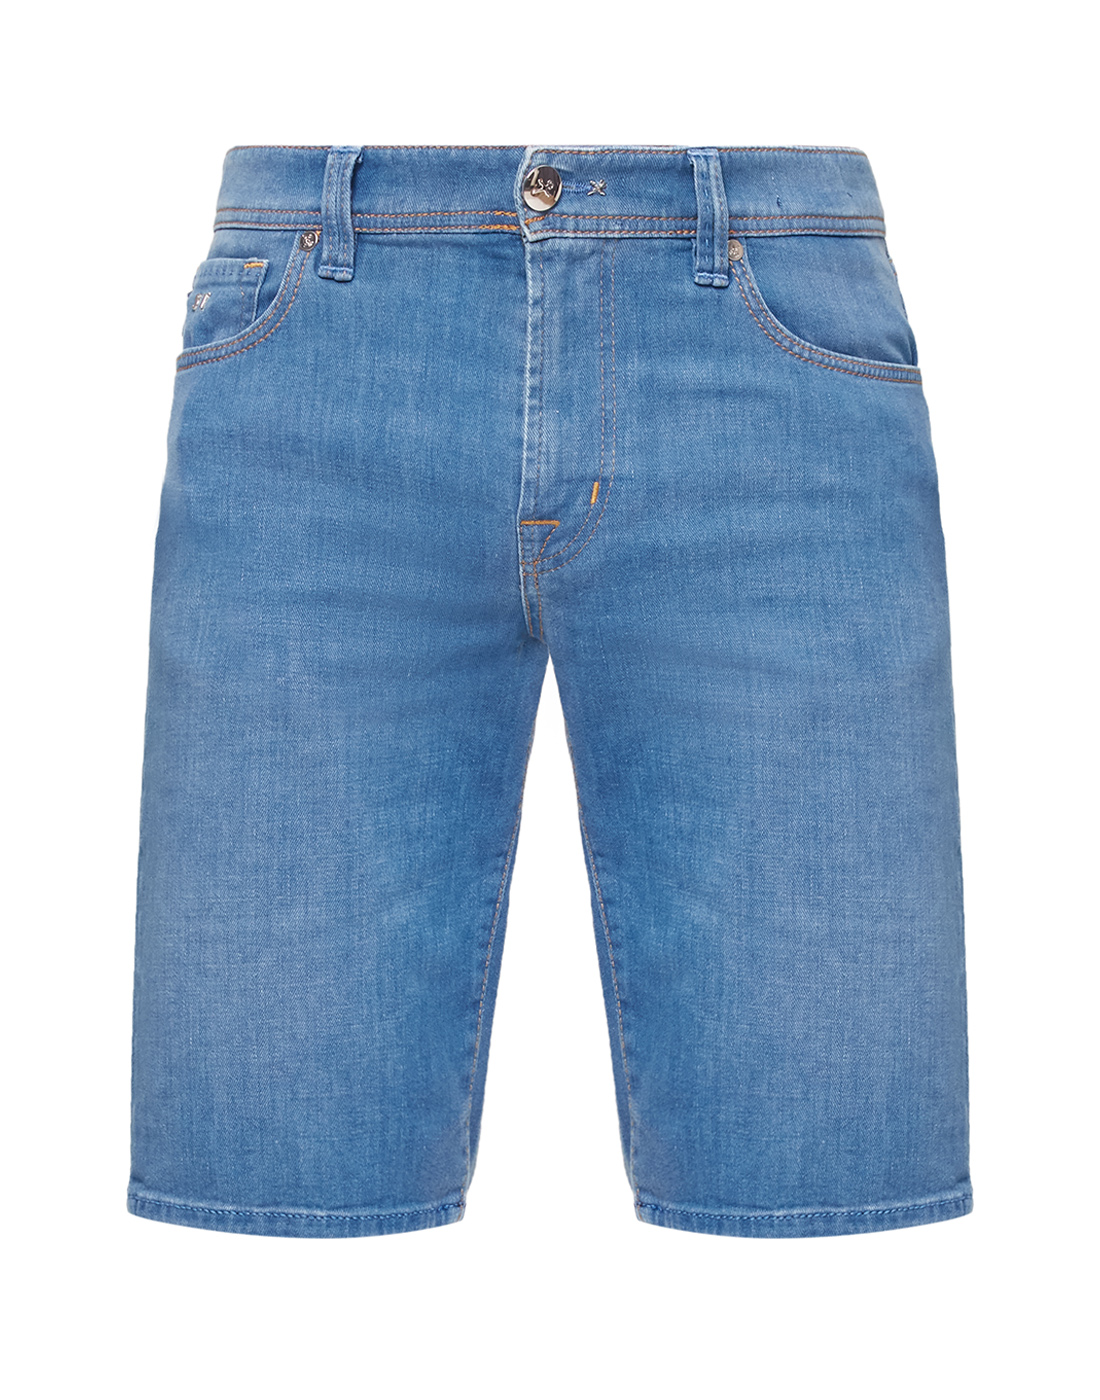 Мужские синие джинсовые шорты Tramarossa SD375_21E22-1